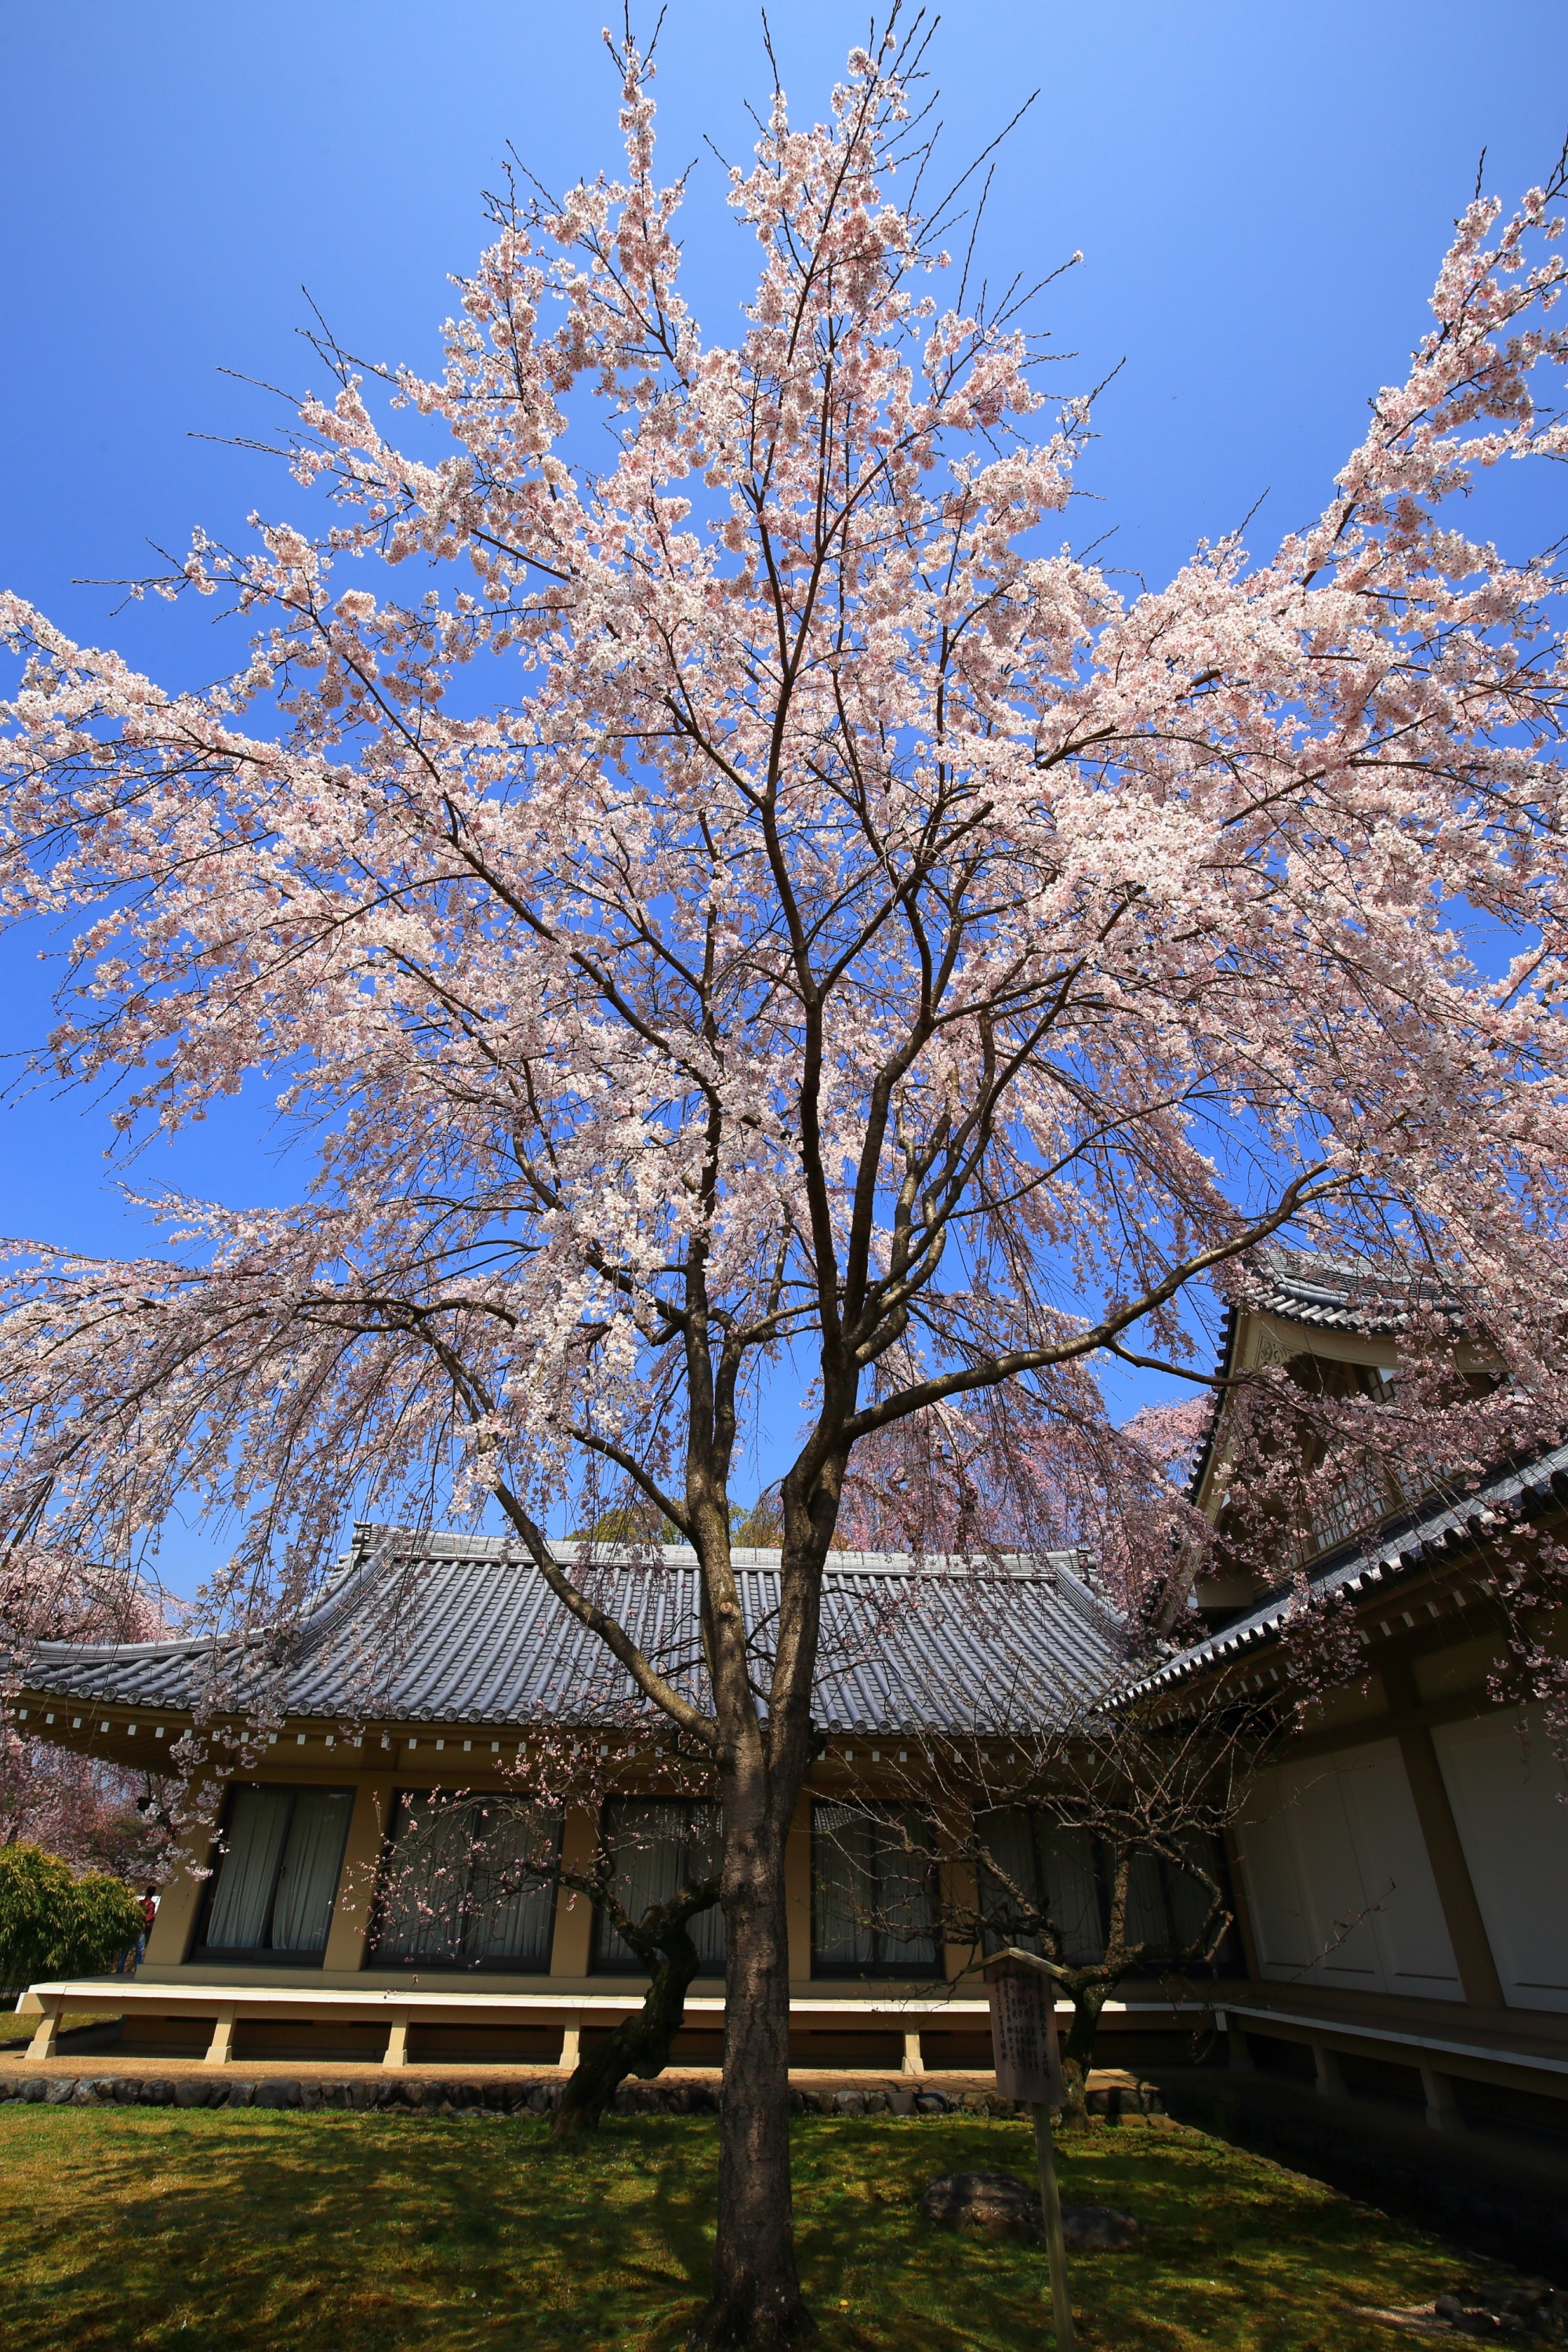 最高の青空の下で咲き誇る桜と霊宝館の絵になる春の風景